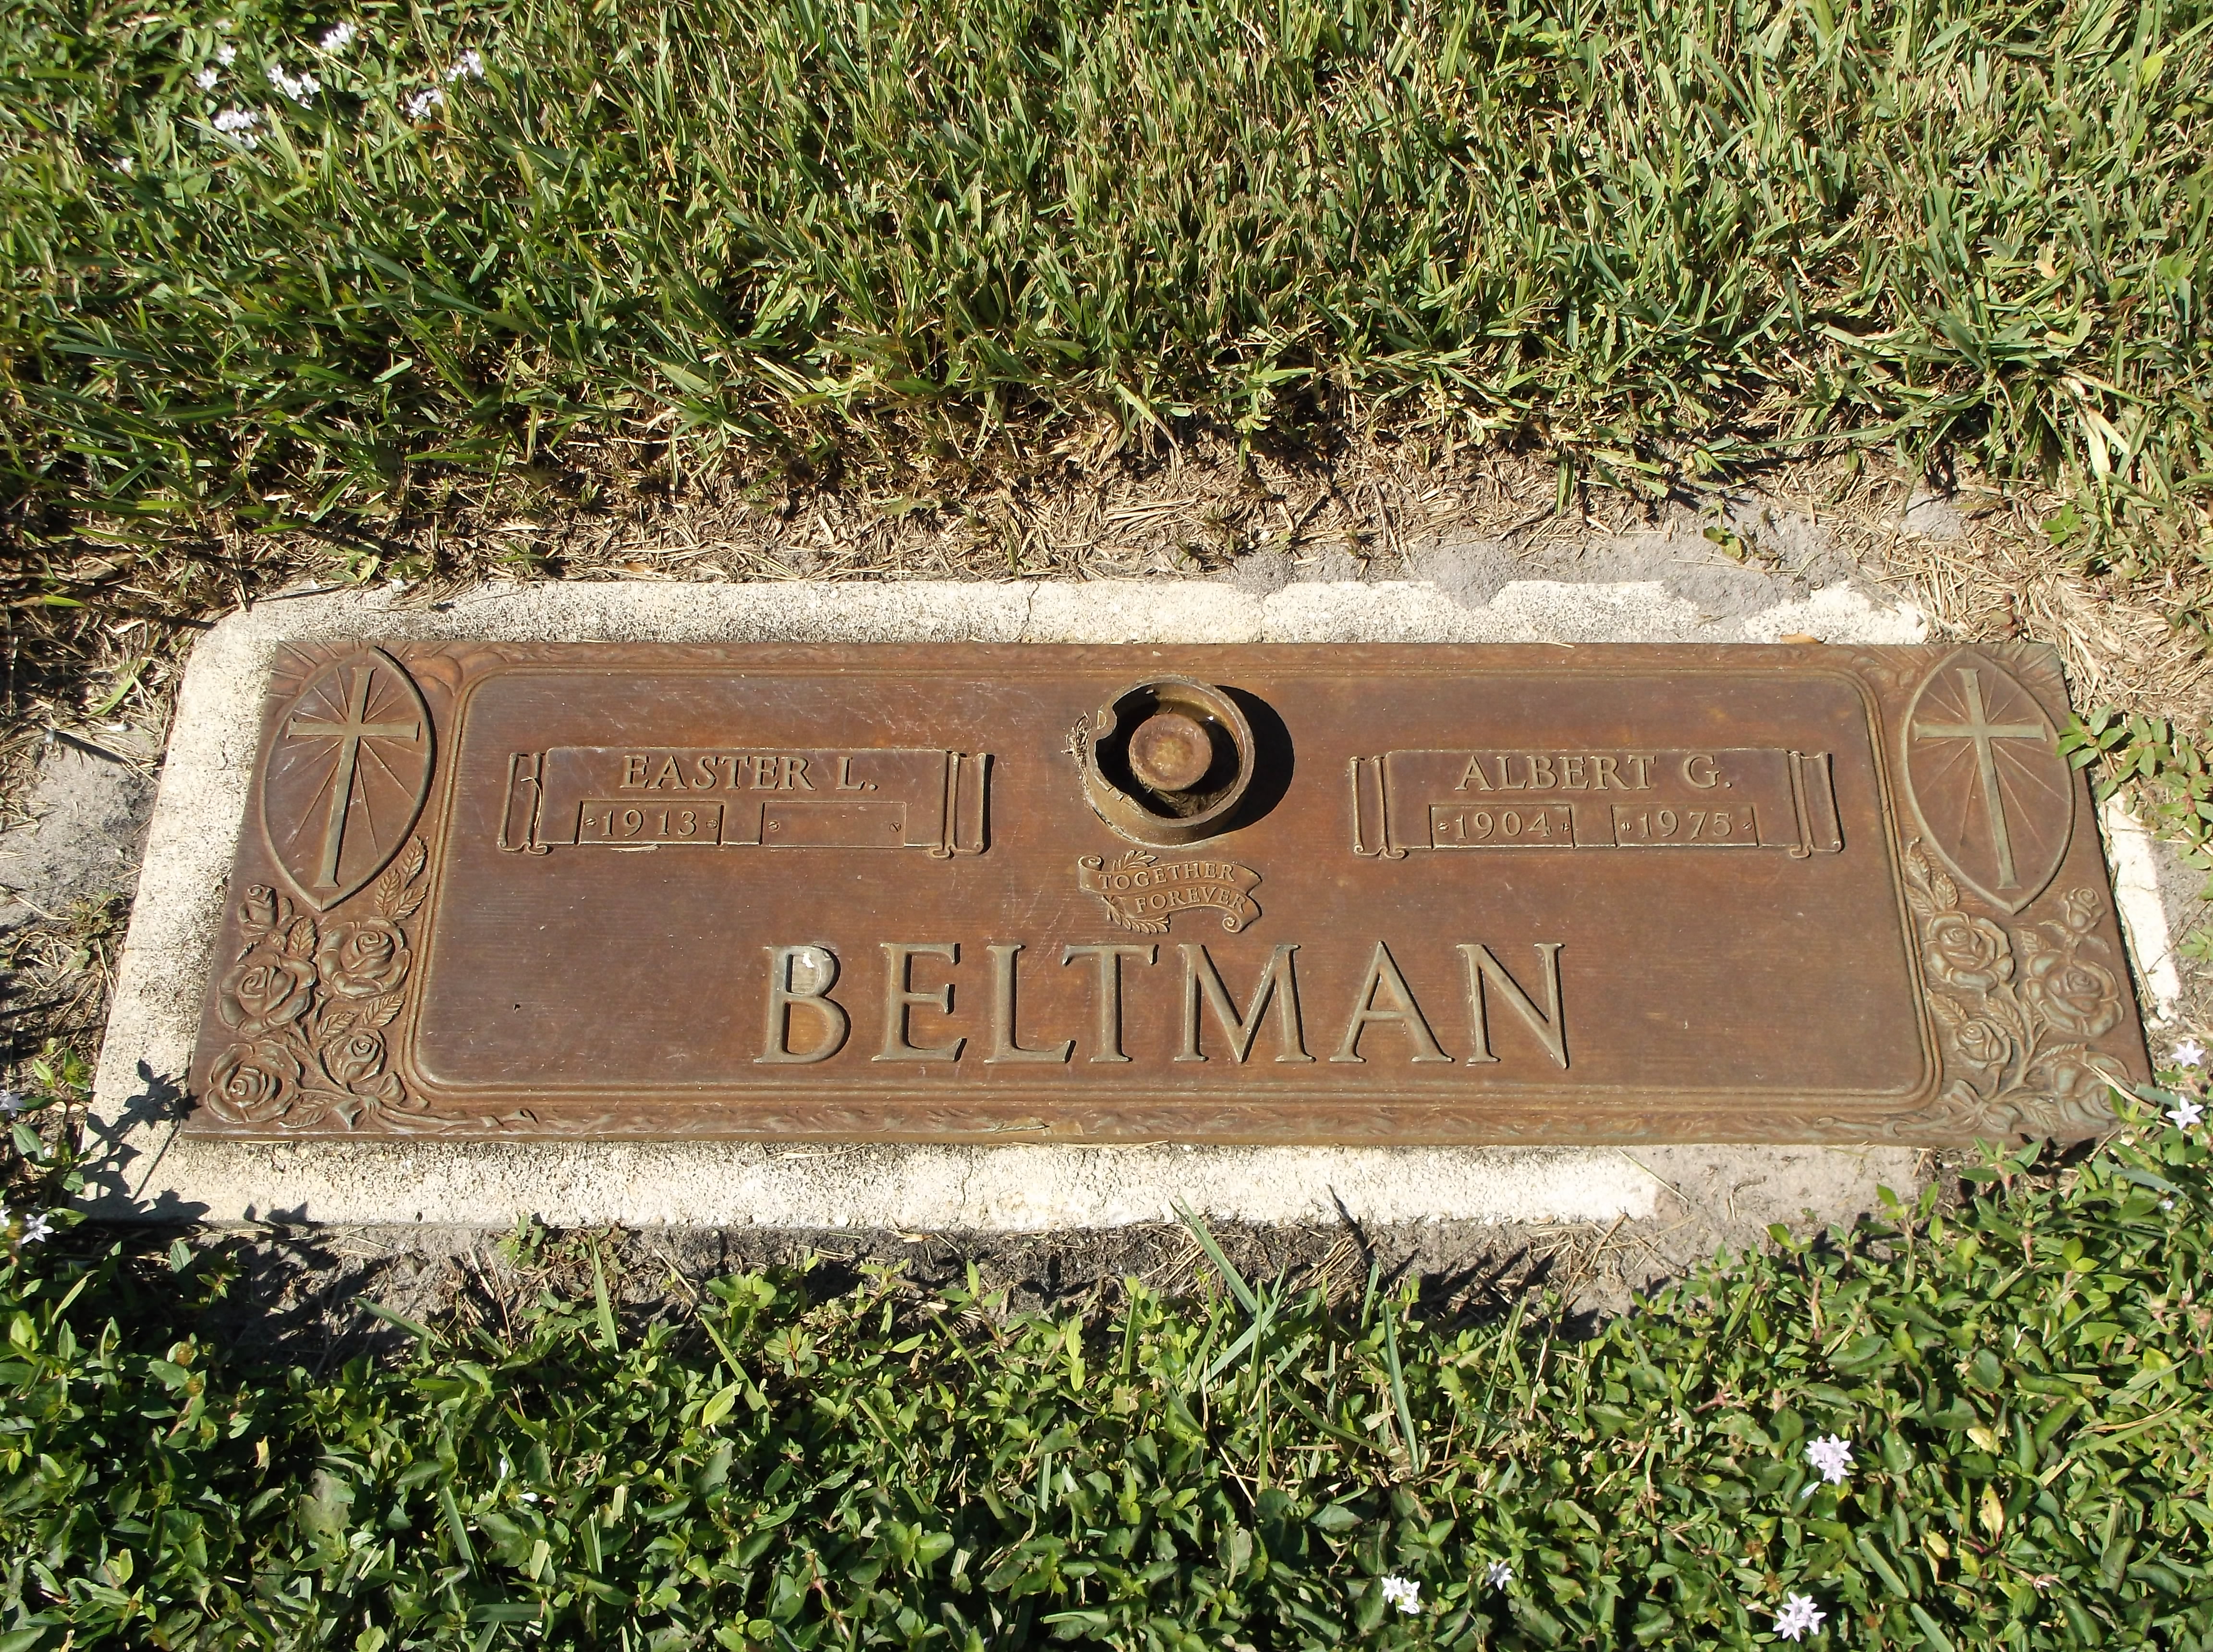 Albert G Beltman